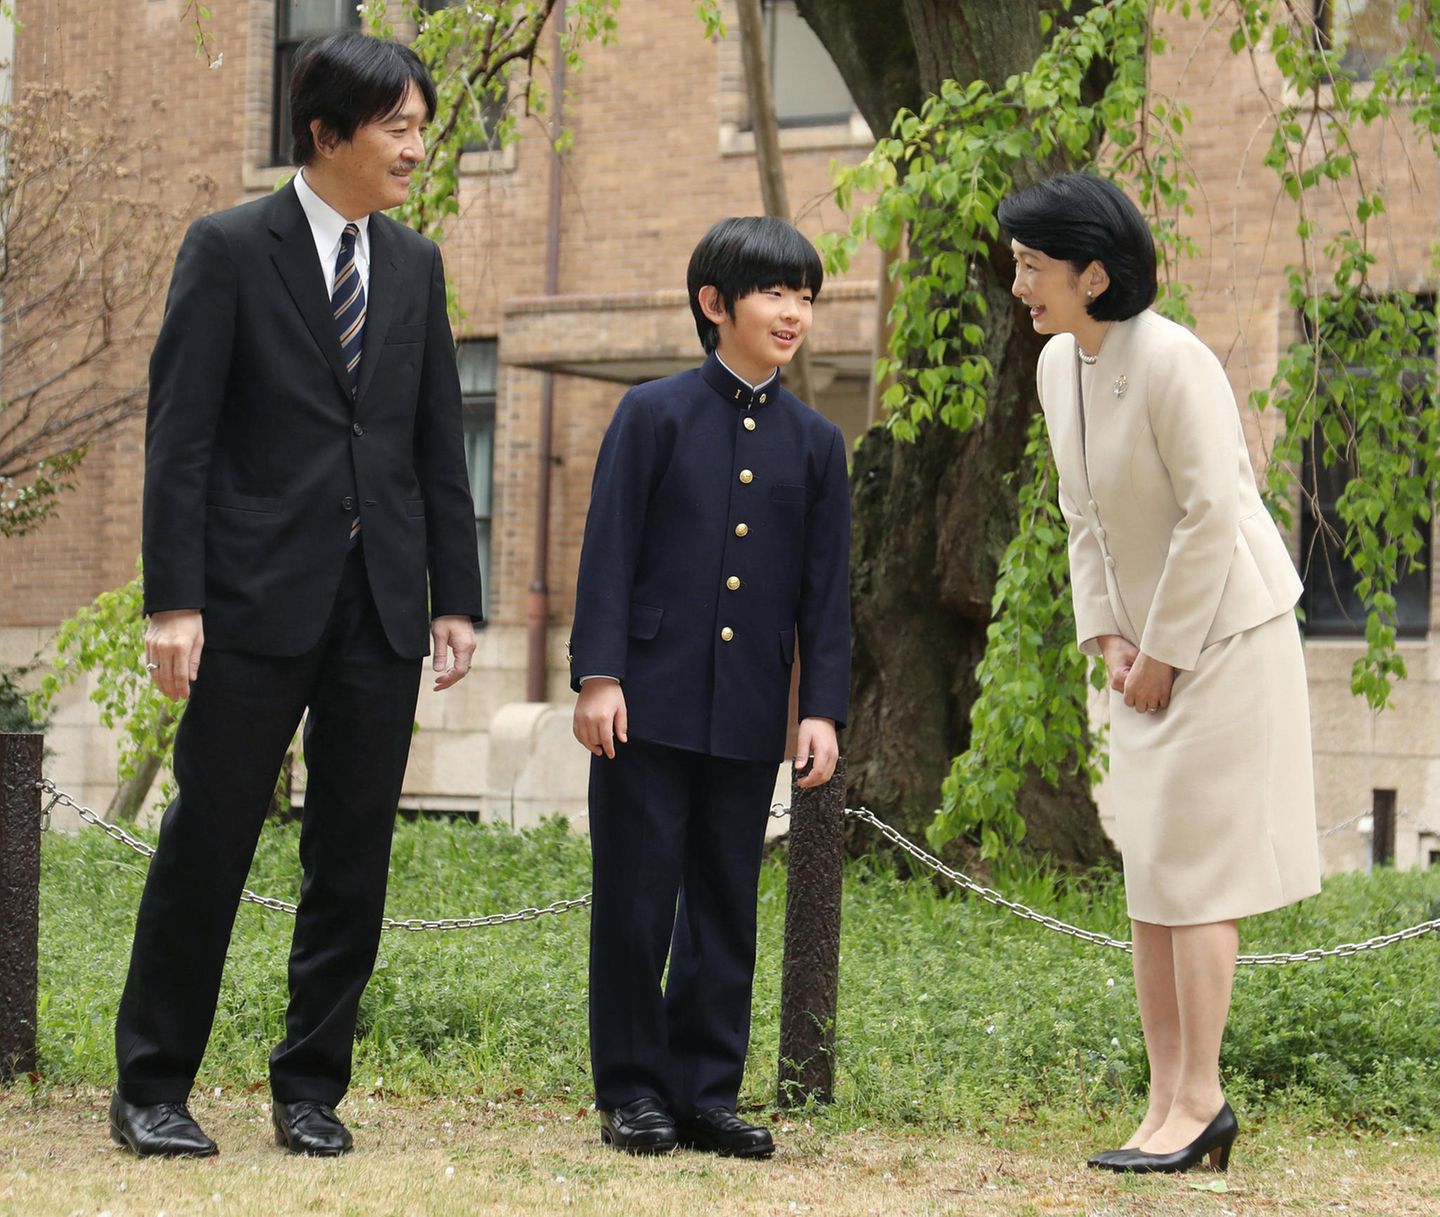 ... seinen Eltern Prinzessin Akishino und Prinz Akishino werden während der Eingangszeremonie einige Erinnerungsfotos geschossen. 